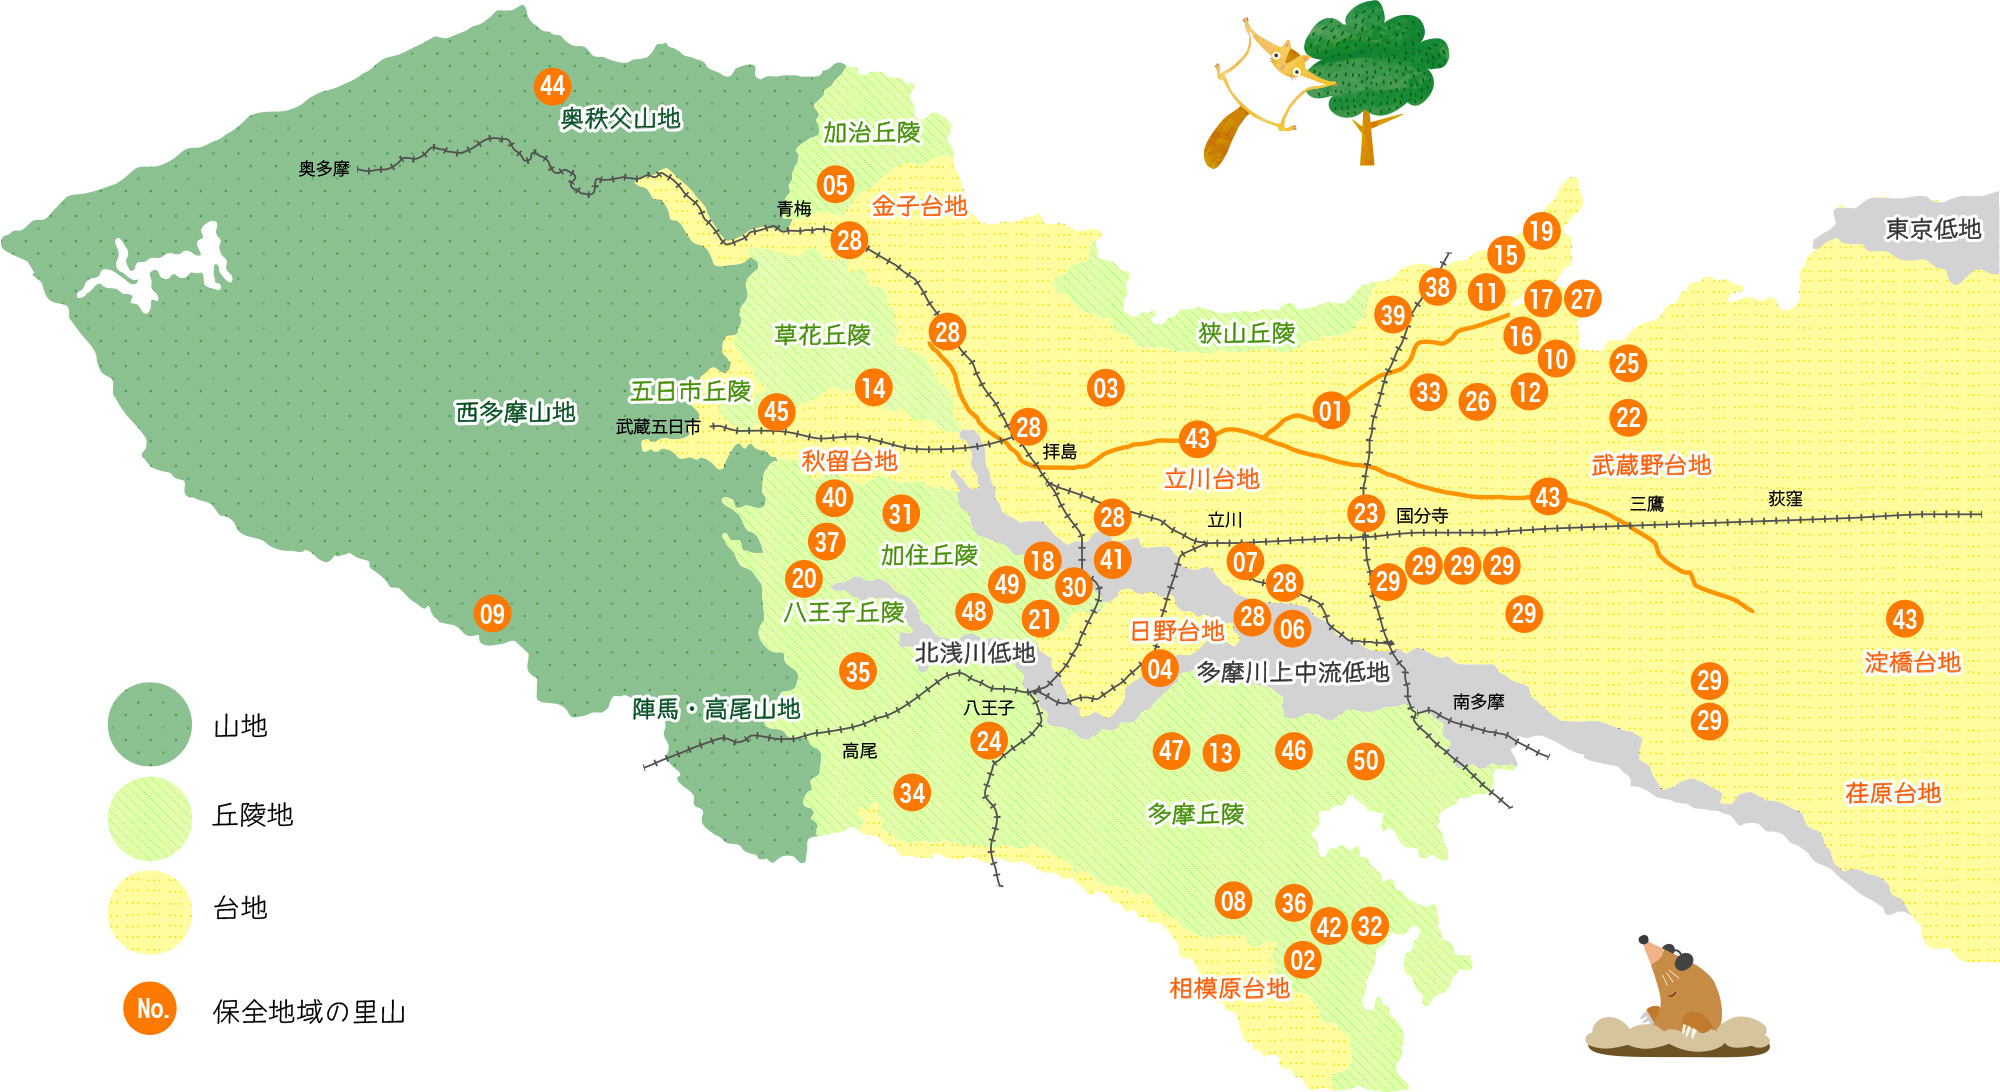 東京都の山地や丘陵地、台地の分布、保全地域の里山の場所が示された地図。